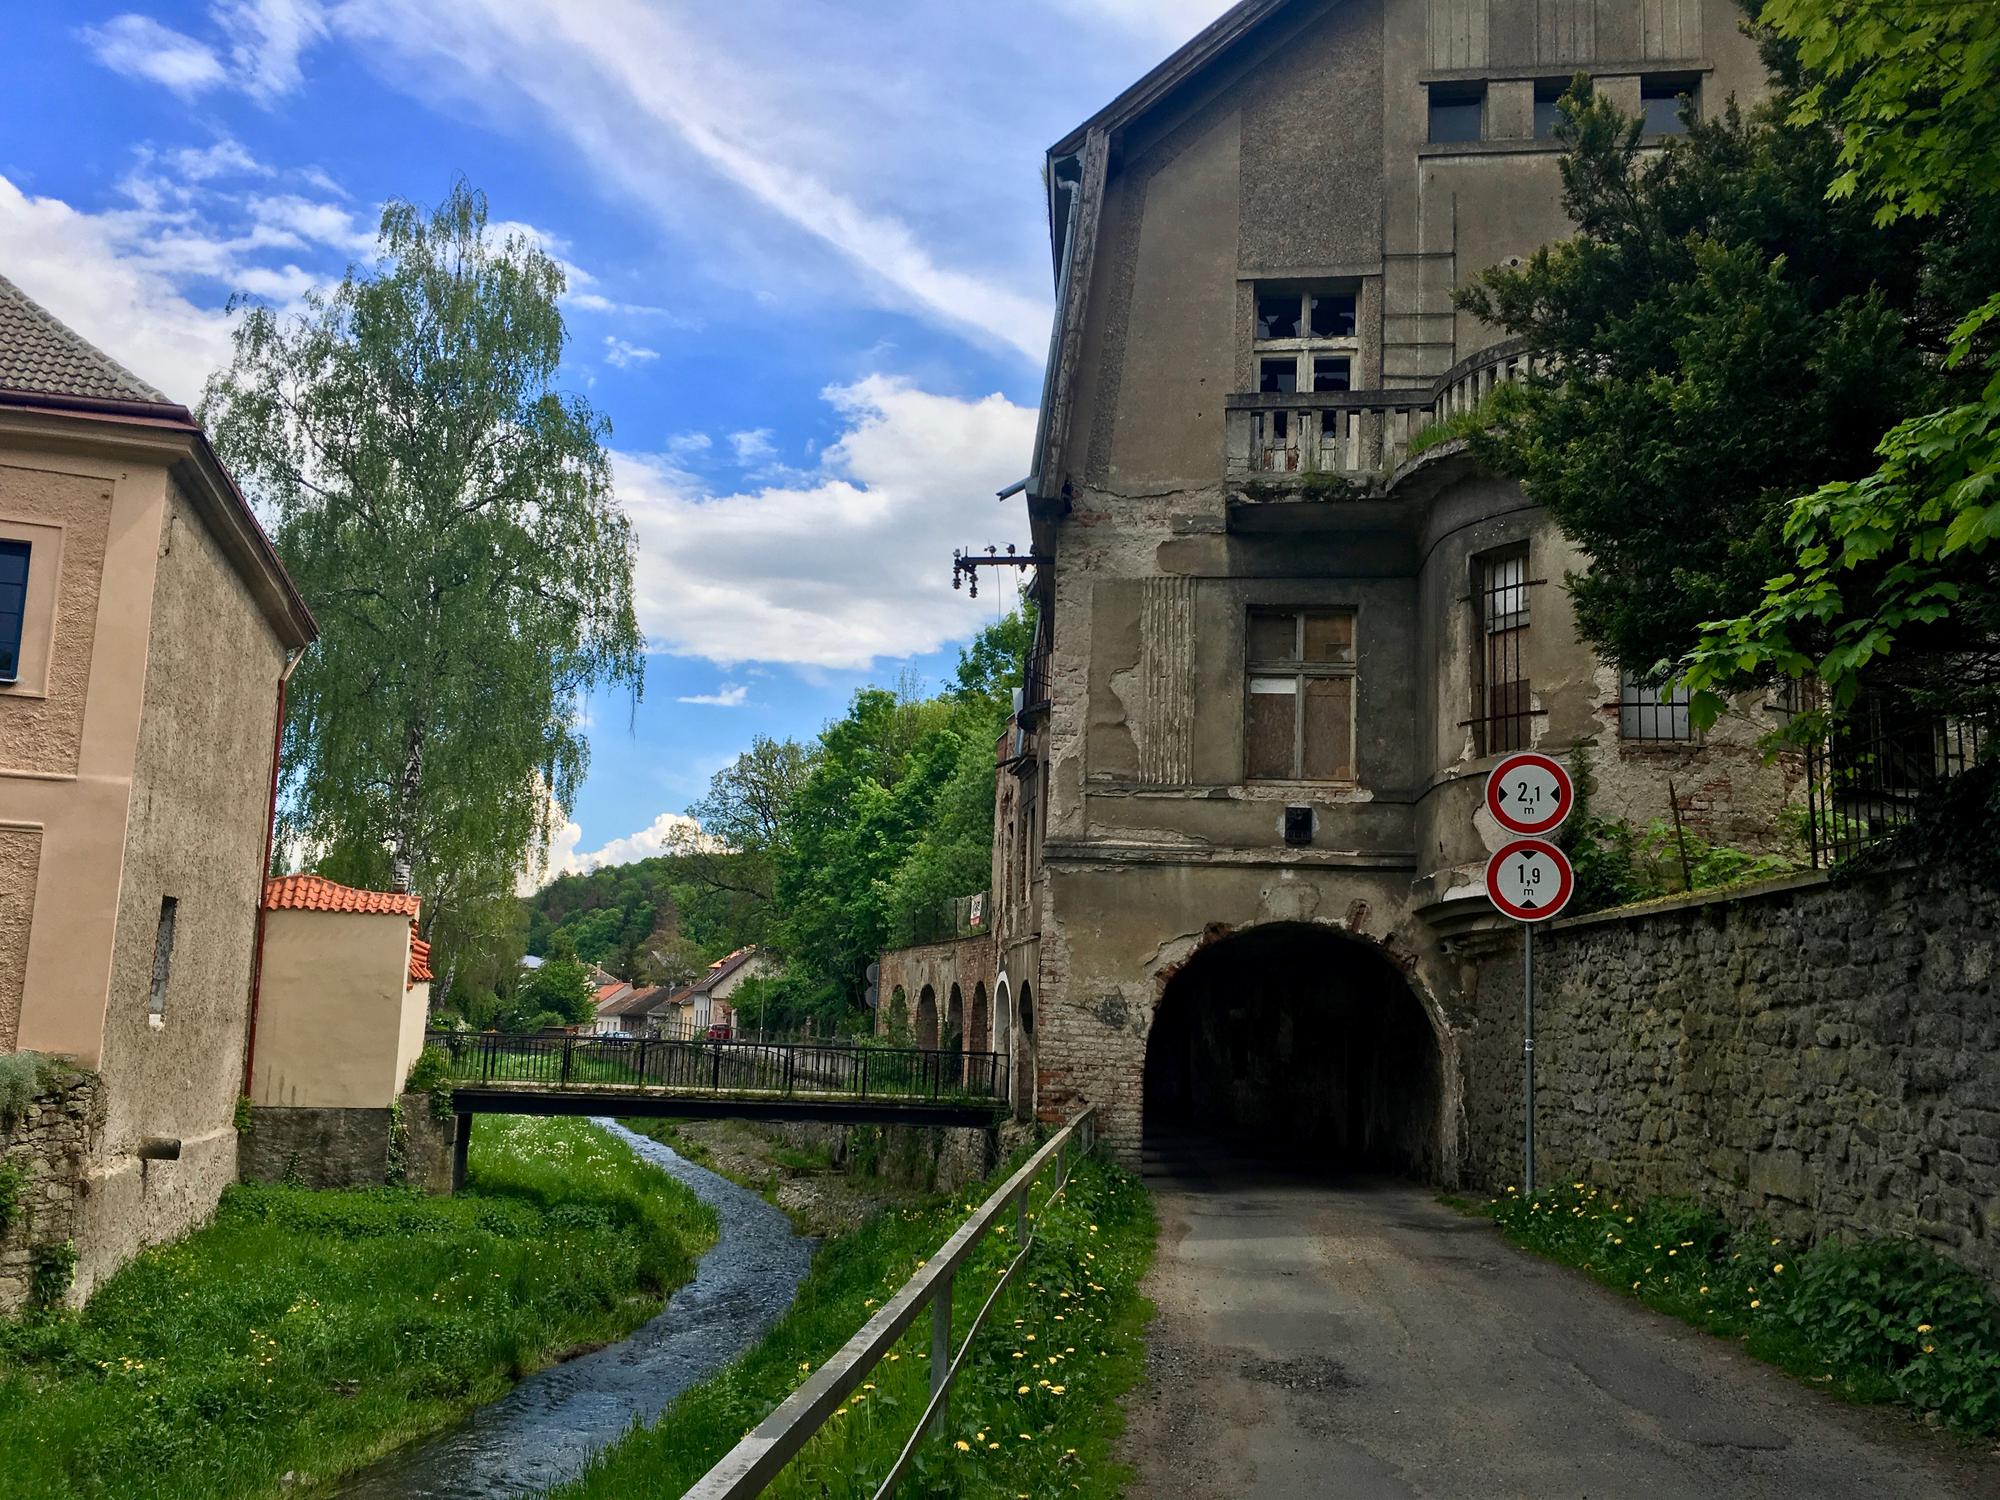 🇨🇿 Кутна-Гора, Чехия, май 2017.